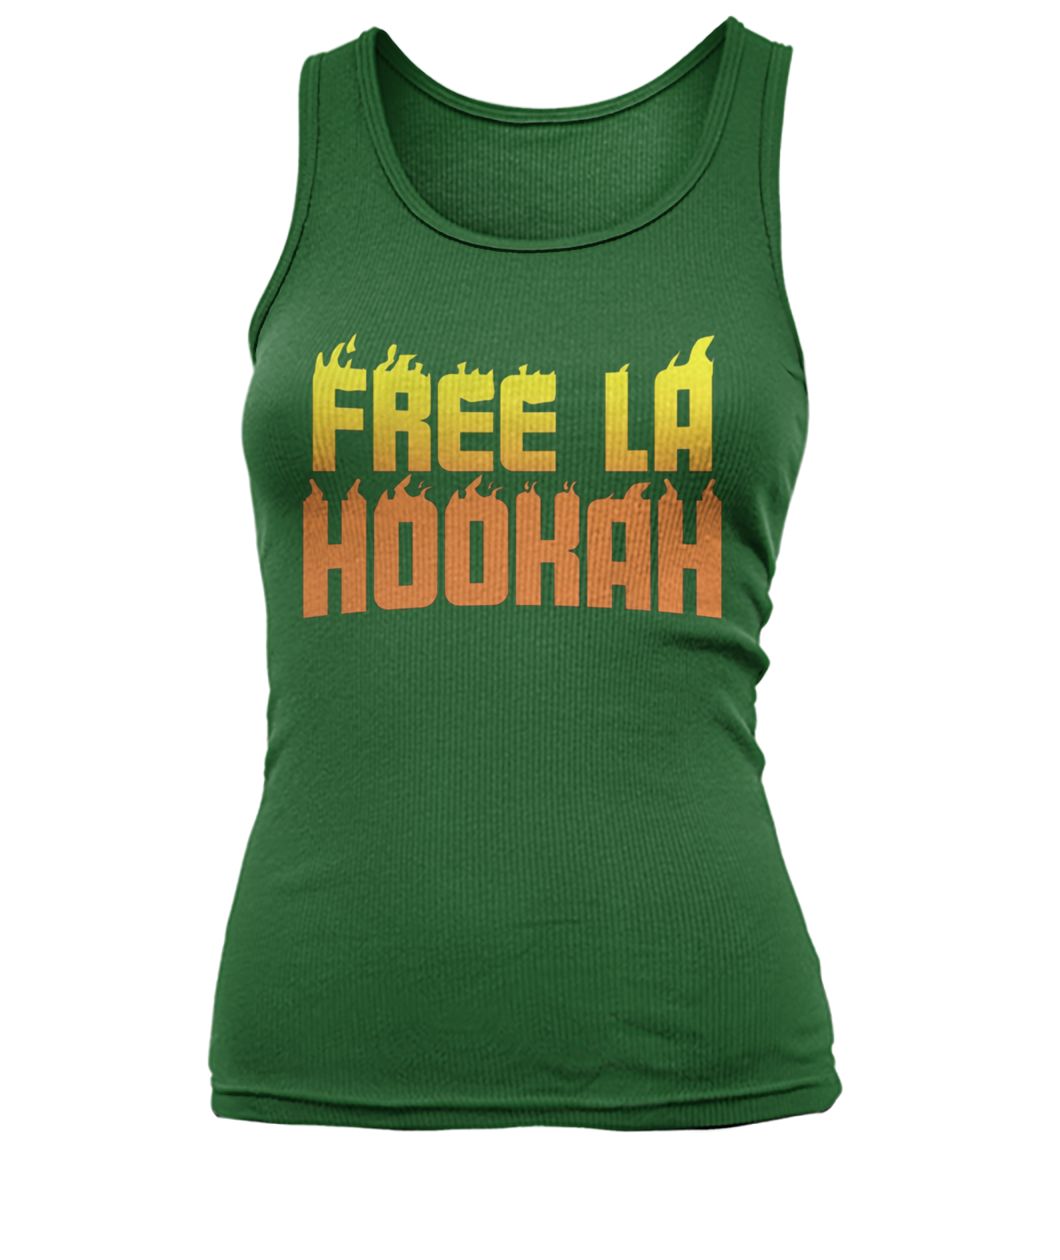 Free la hookah women's tank top